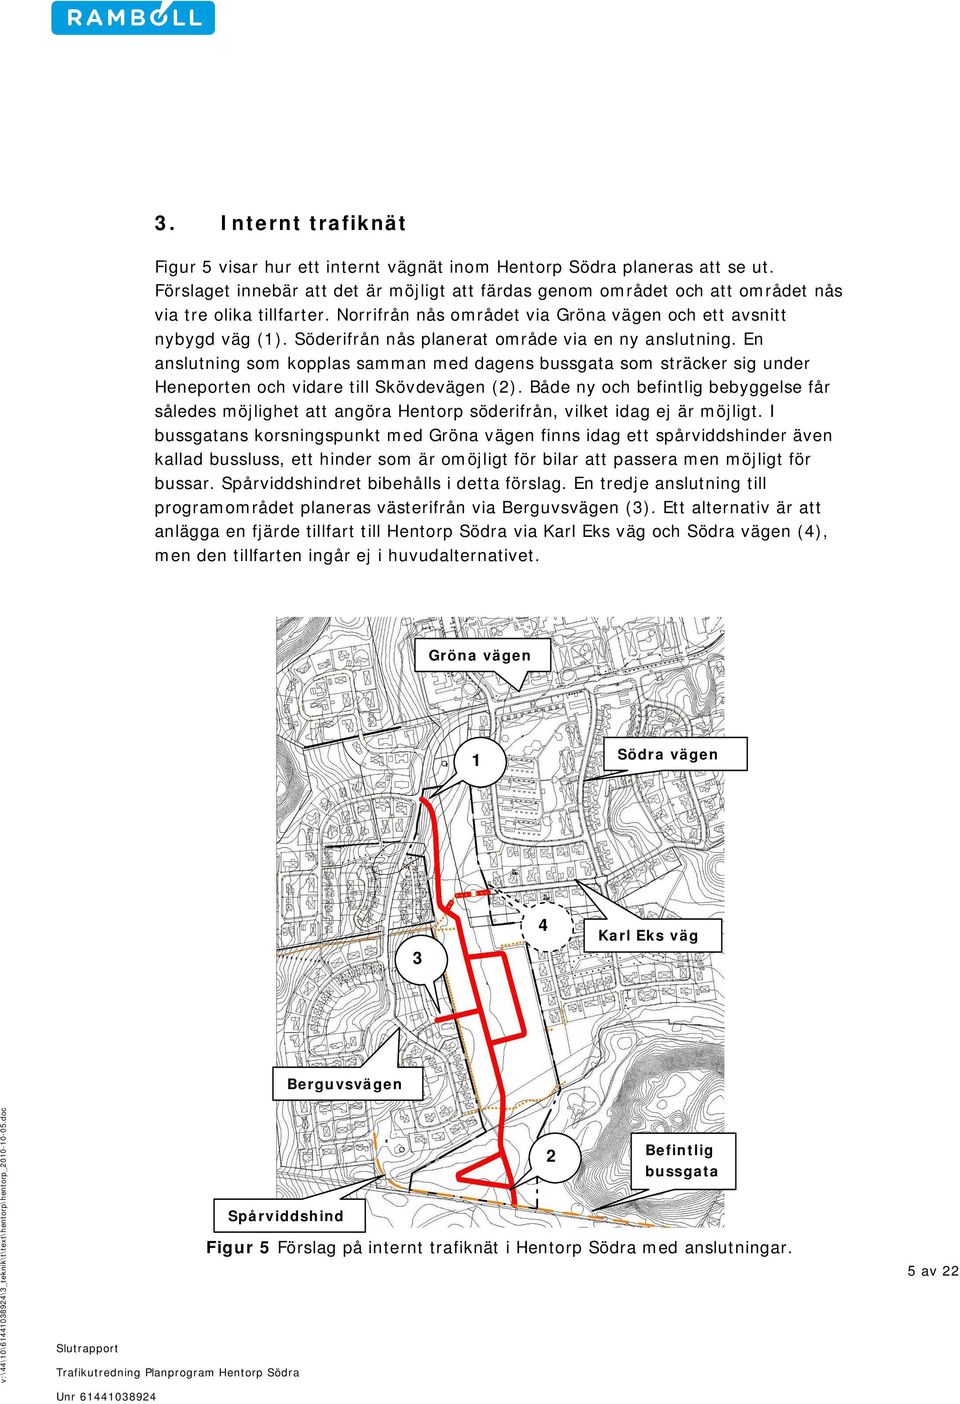 Söderifrån nås planerat område via en ny anslutning. En anslutning som kopplas samman med dagens bussgata som sträcker sig under Heneporten och vidare till Skövdevägen (2).